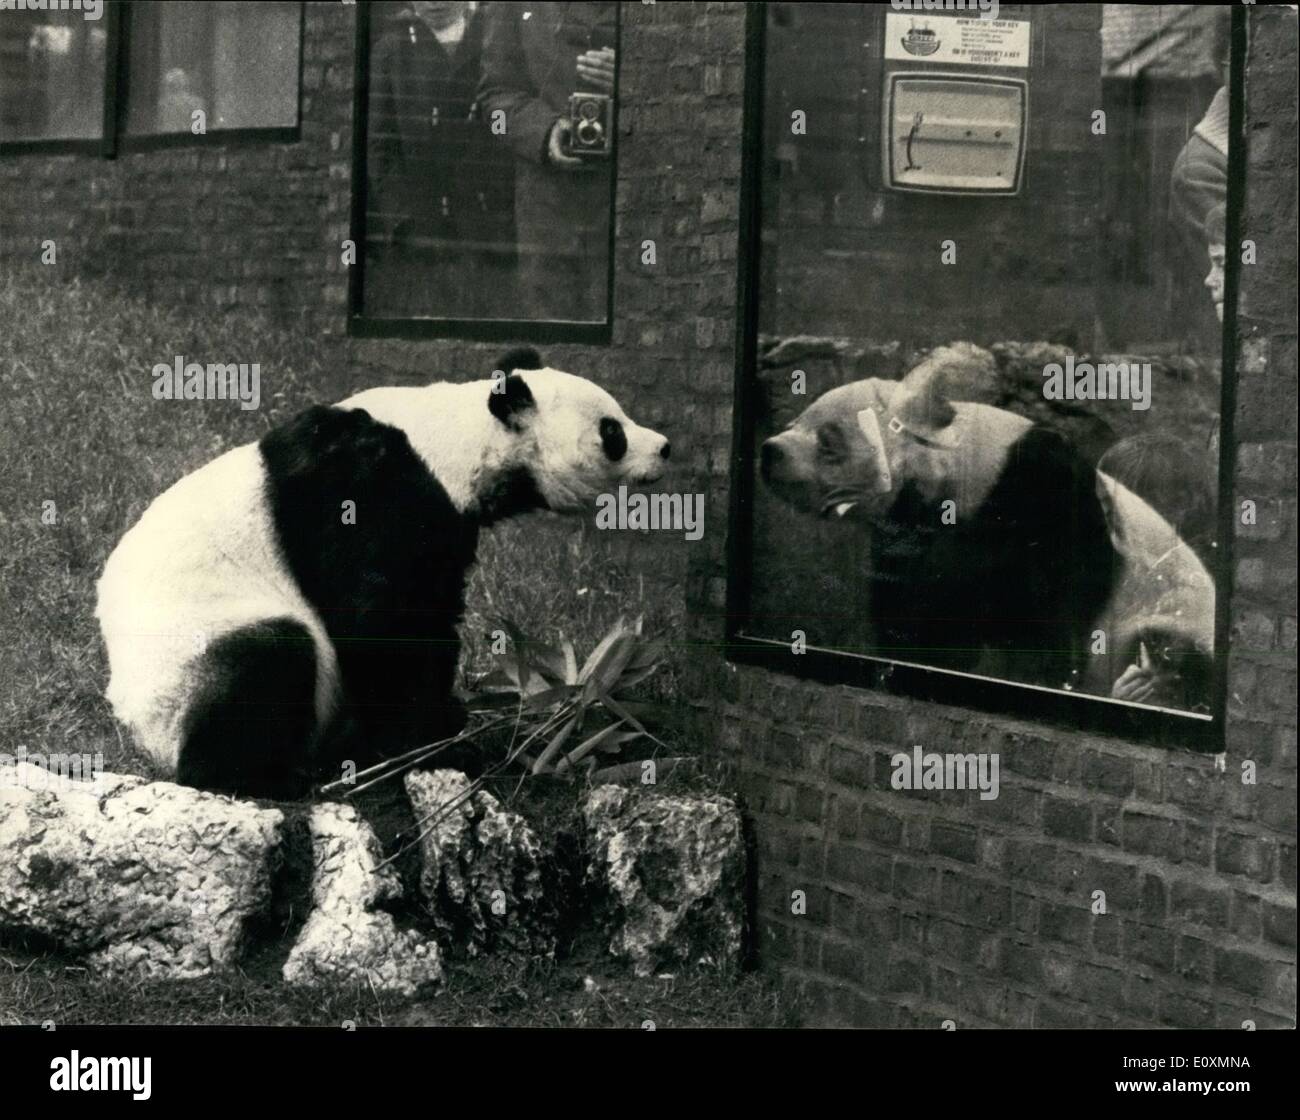 4. April 1967 - '' Chi-Chi'' On The verschieben Again: "Chi-Chi'', in diesem Monat reiste Panda ist eine Bewegung wieder. Heute zog sie aus ihrem alten Quartier in der Nähe der Uhrturm im London Zoo, ein neues, größeres Gehäuse entgegengesetzte zu den Kinderzoo. Ihre Unterkunft verfügt über Klimaanlage und hinter Kulissen Unterkunft auf einer zweiten Riesenpanda, in der Hoffnung, dass "ein-An'', der russischen männlichen Panda noch London im Herbst besuchen vielleicht könnte vorgesehen hat. Kopf Keeper Sam Morton, nach Moskau wollen noch wird er auf der Suche nach "Chi-Chi" in ihrem neuen Quartier Stockfoto